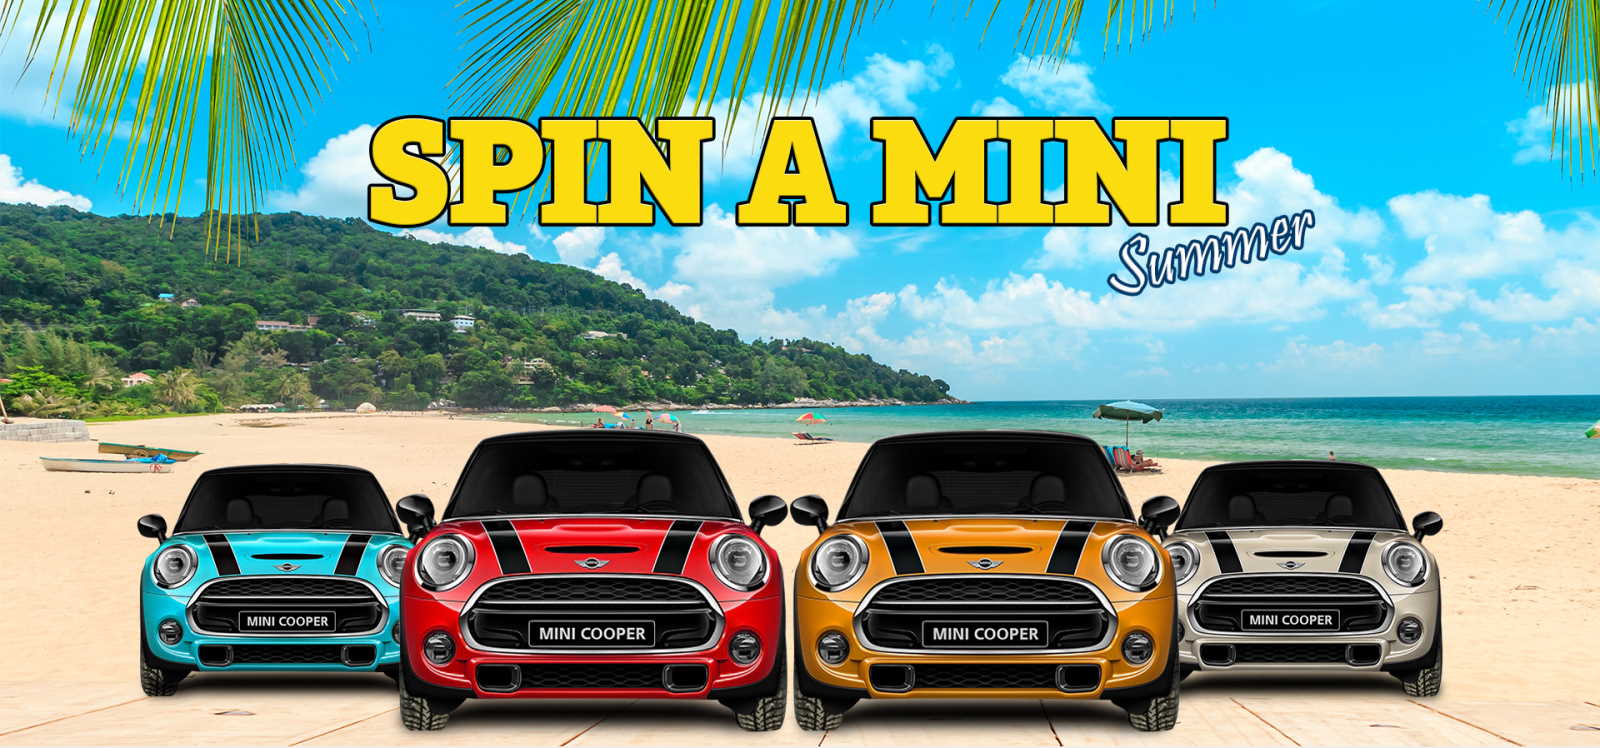 Spin a Mini Summer bei Drück Glück – 4 Wochen, 4 Spiele, 4 Mini Cooper zu gewinnen